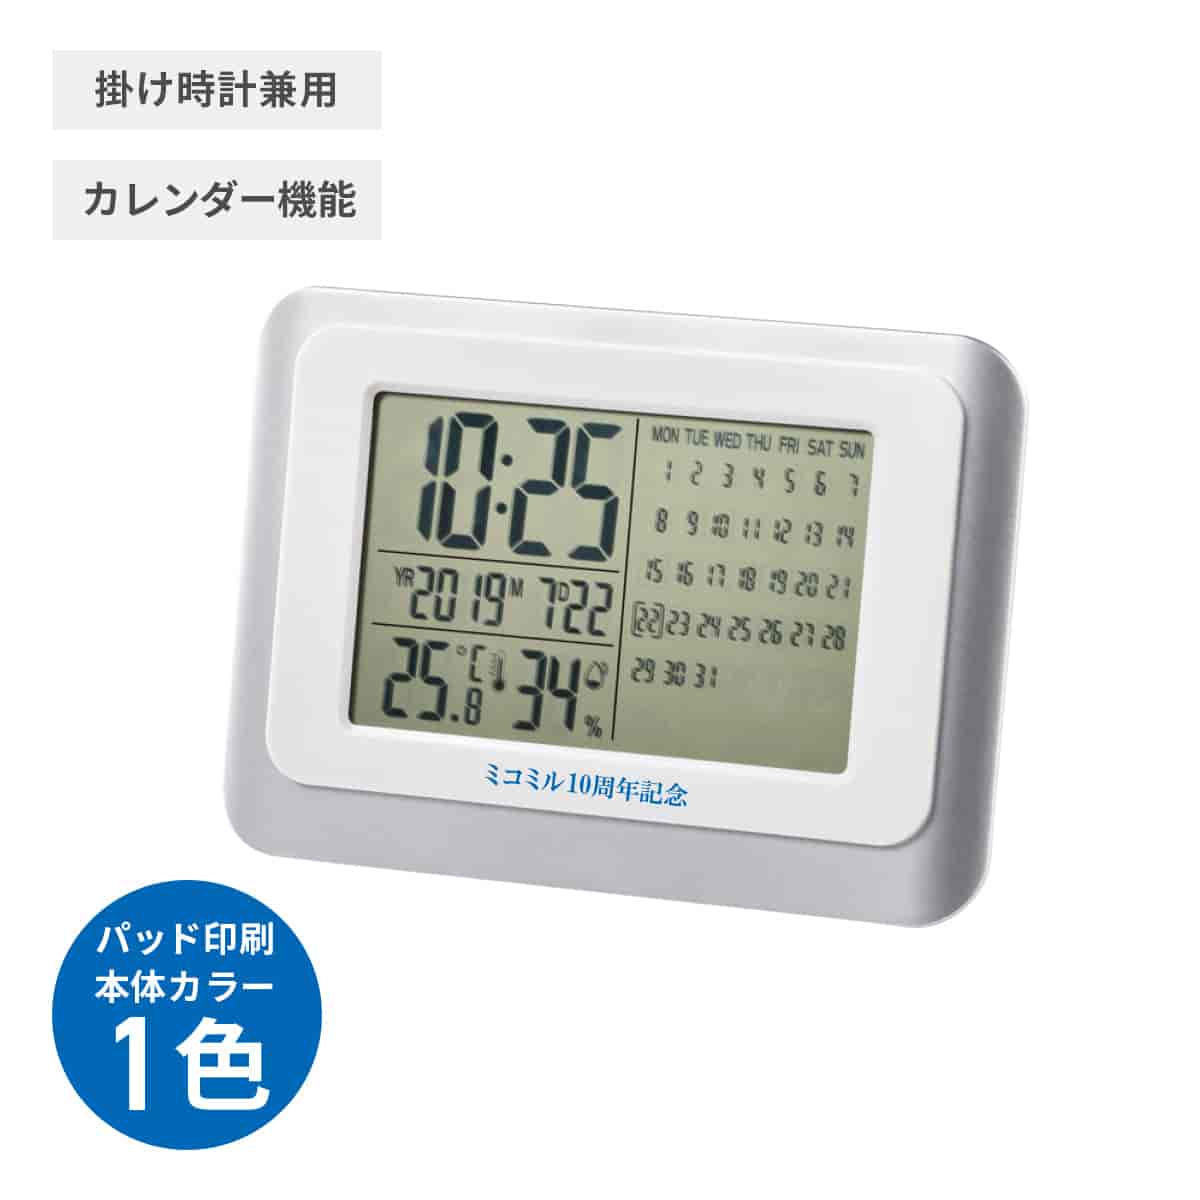 デジタルカレンダークロック【オリジナル時計 / パッド印刷】 画像1